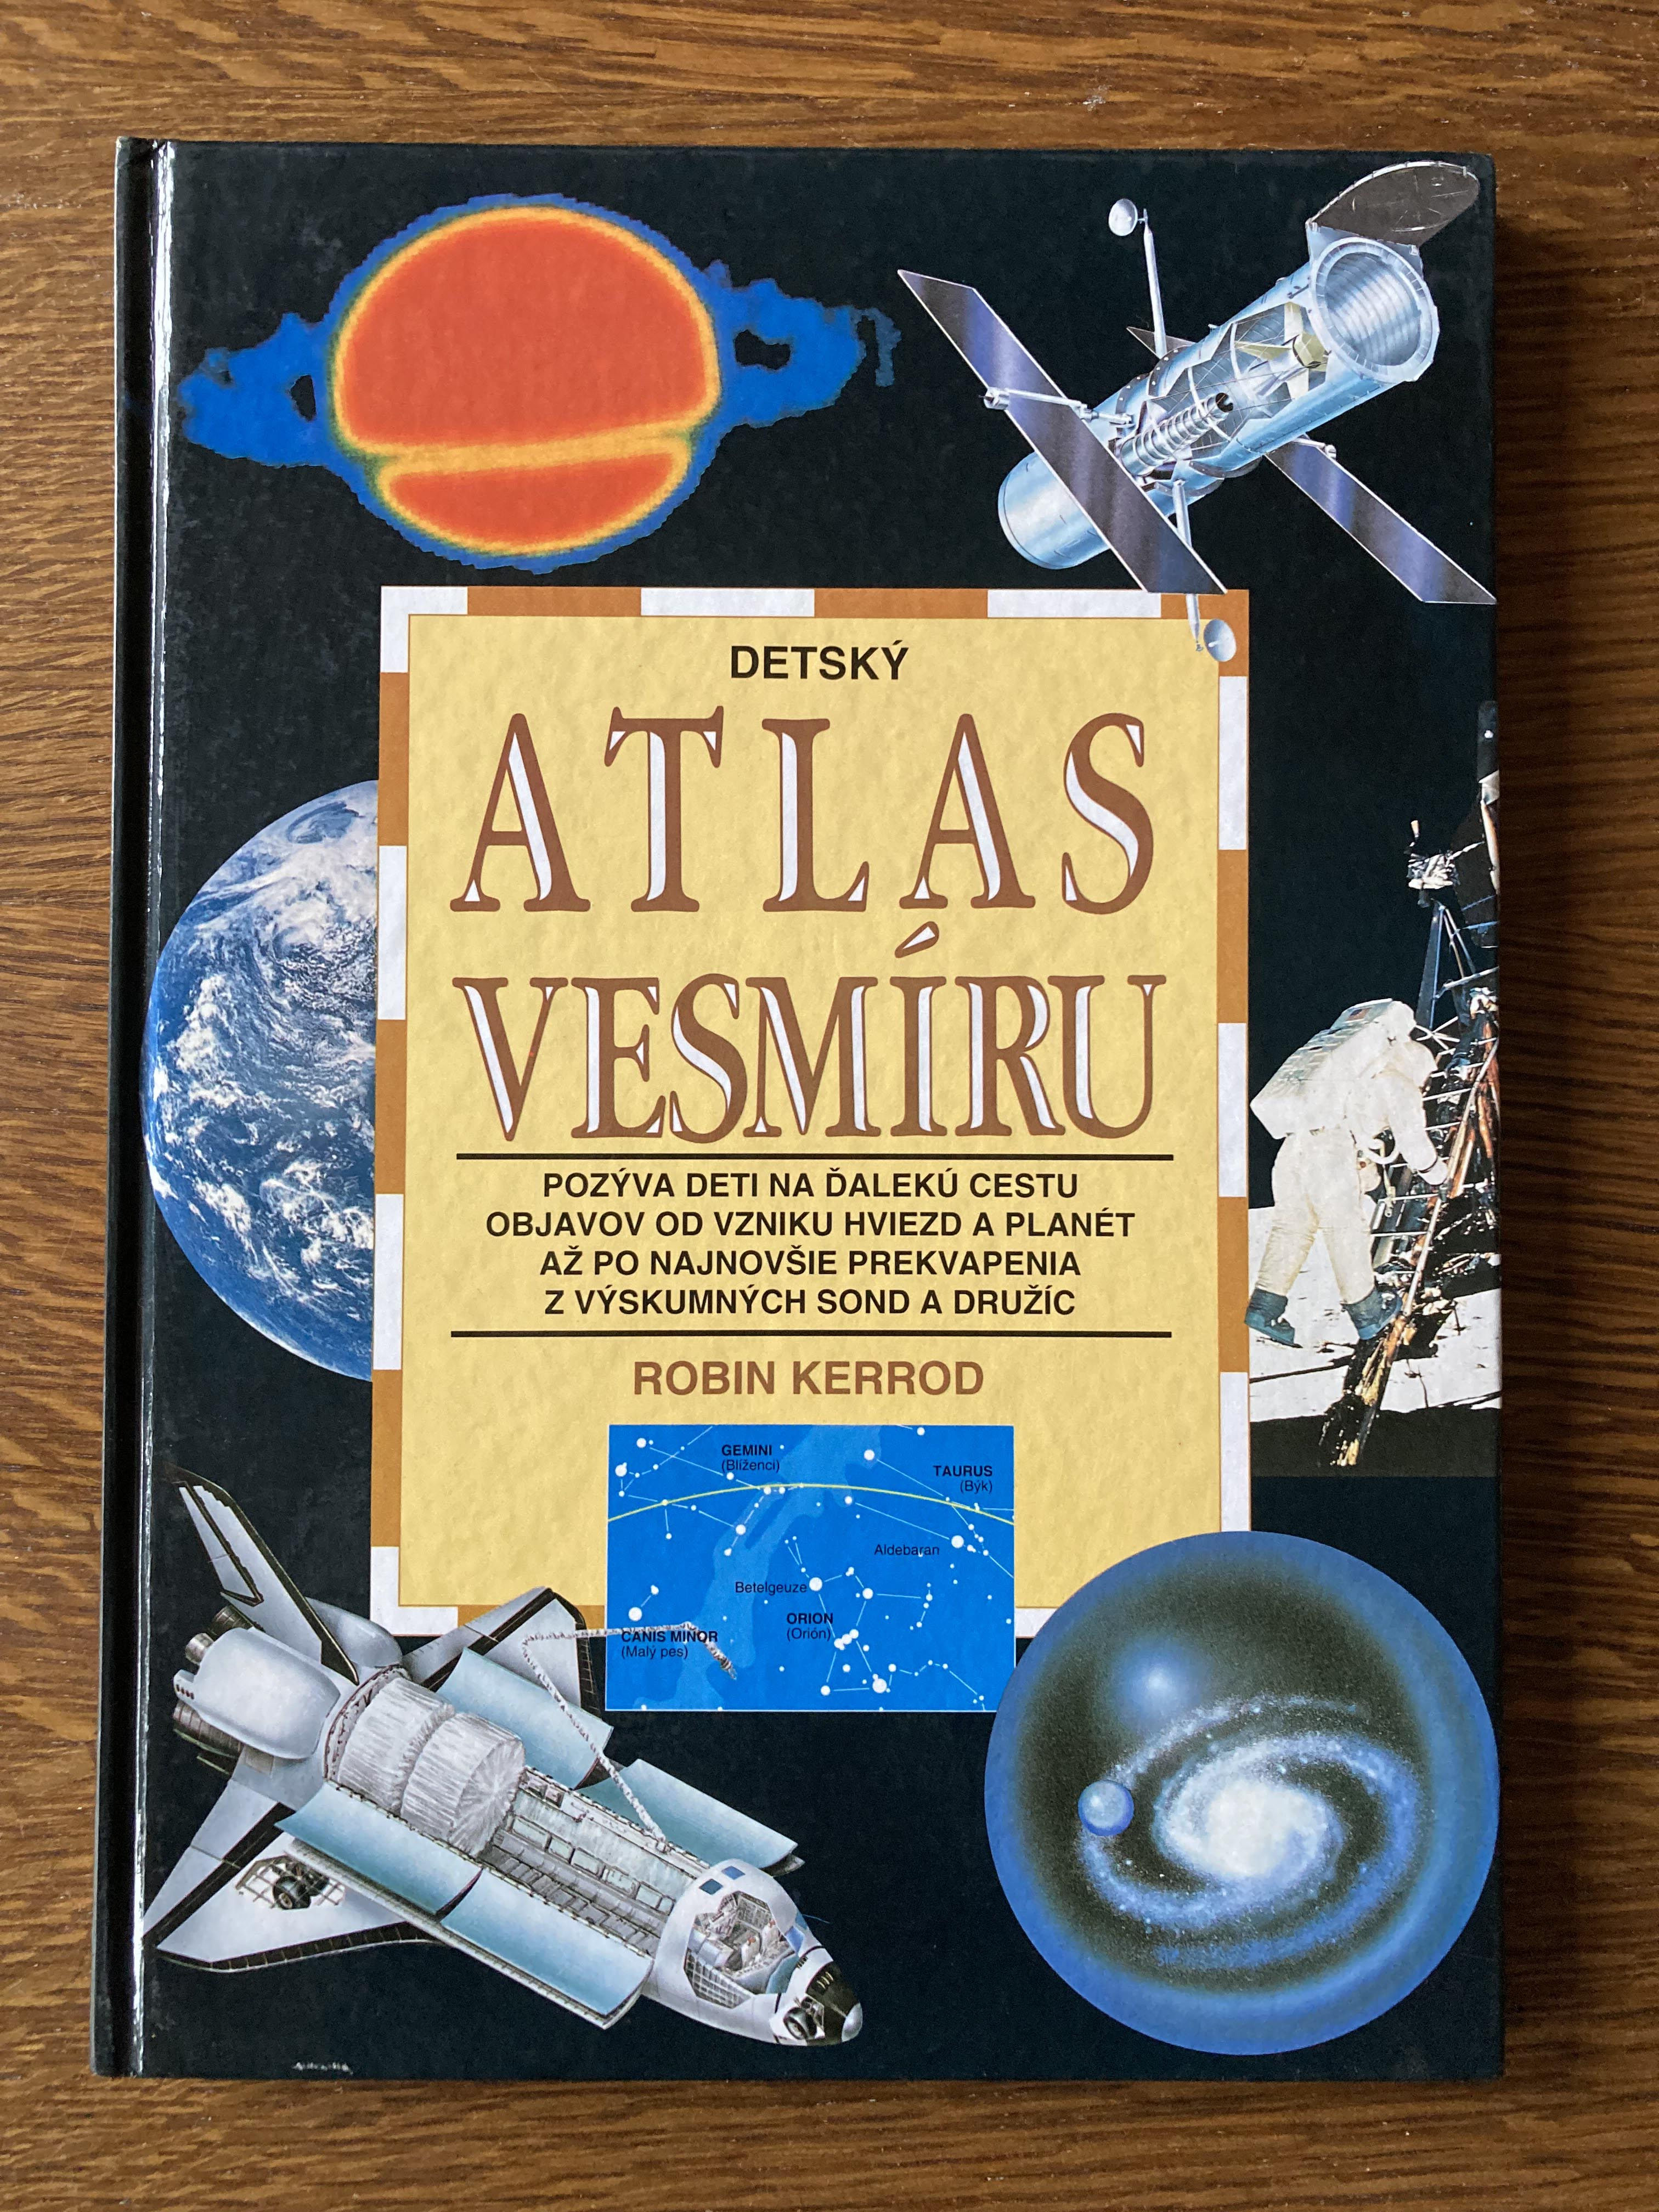 Detský atlas vesmíru (Robin Kerrod)